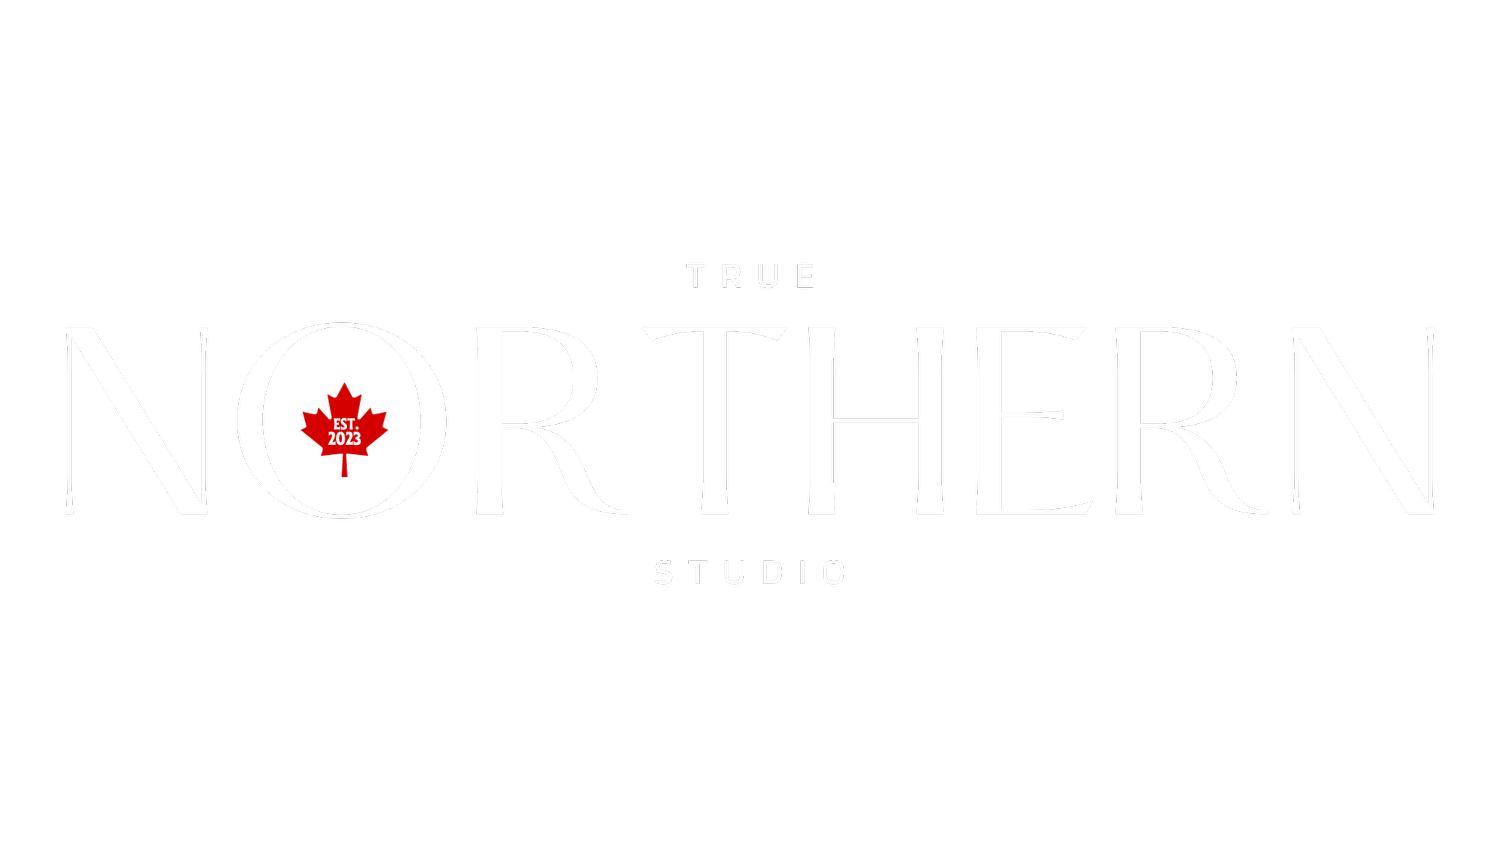 True Northern Studio